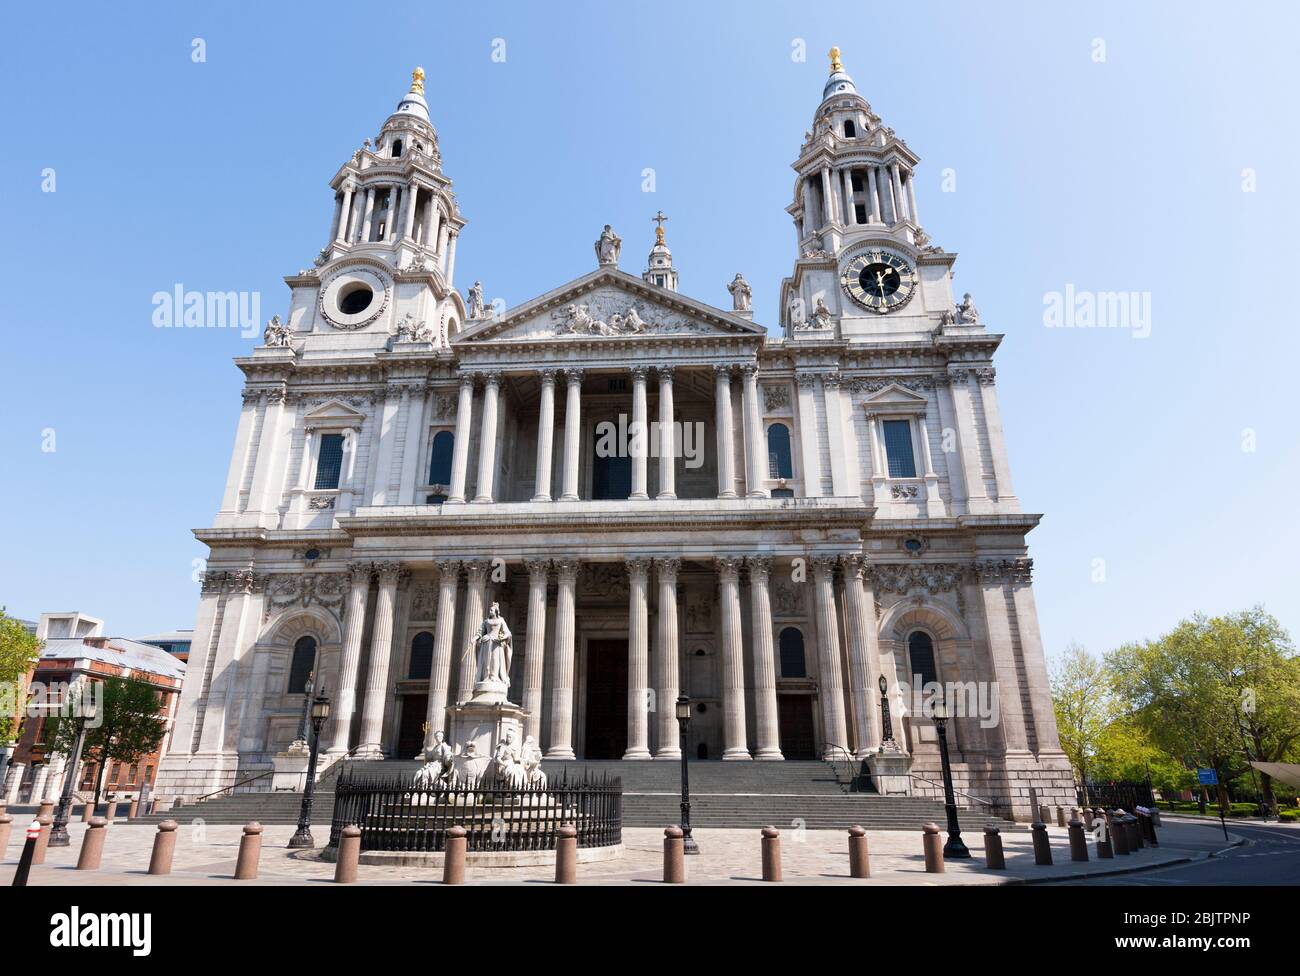 Façade avant extérieure extérieure extérieure / extérieur de la cathédrale Saint Pauls, Londres, Royaume-Uni. La face ouest est montrée pendant l'après-midi, sans personnes. (118) Banque D'Images